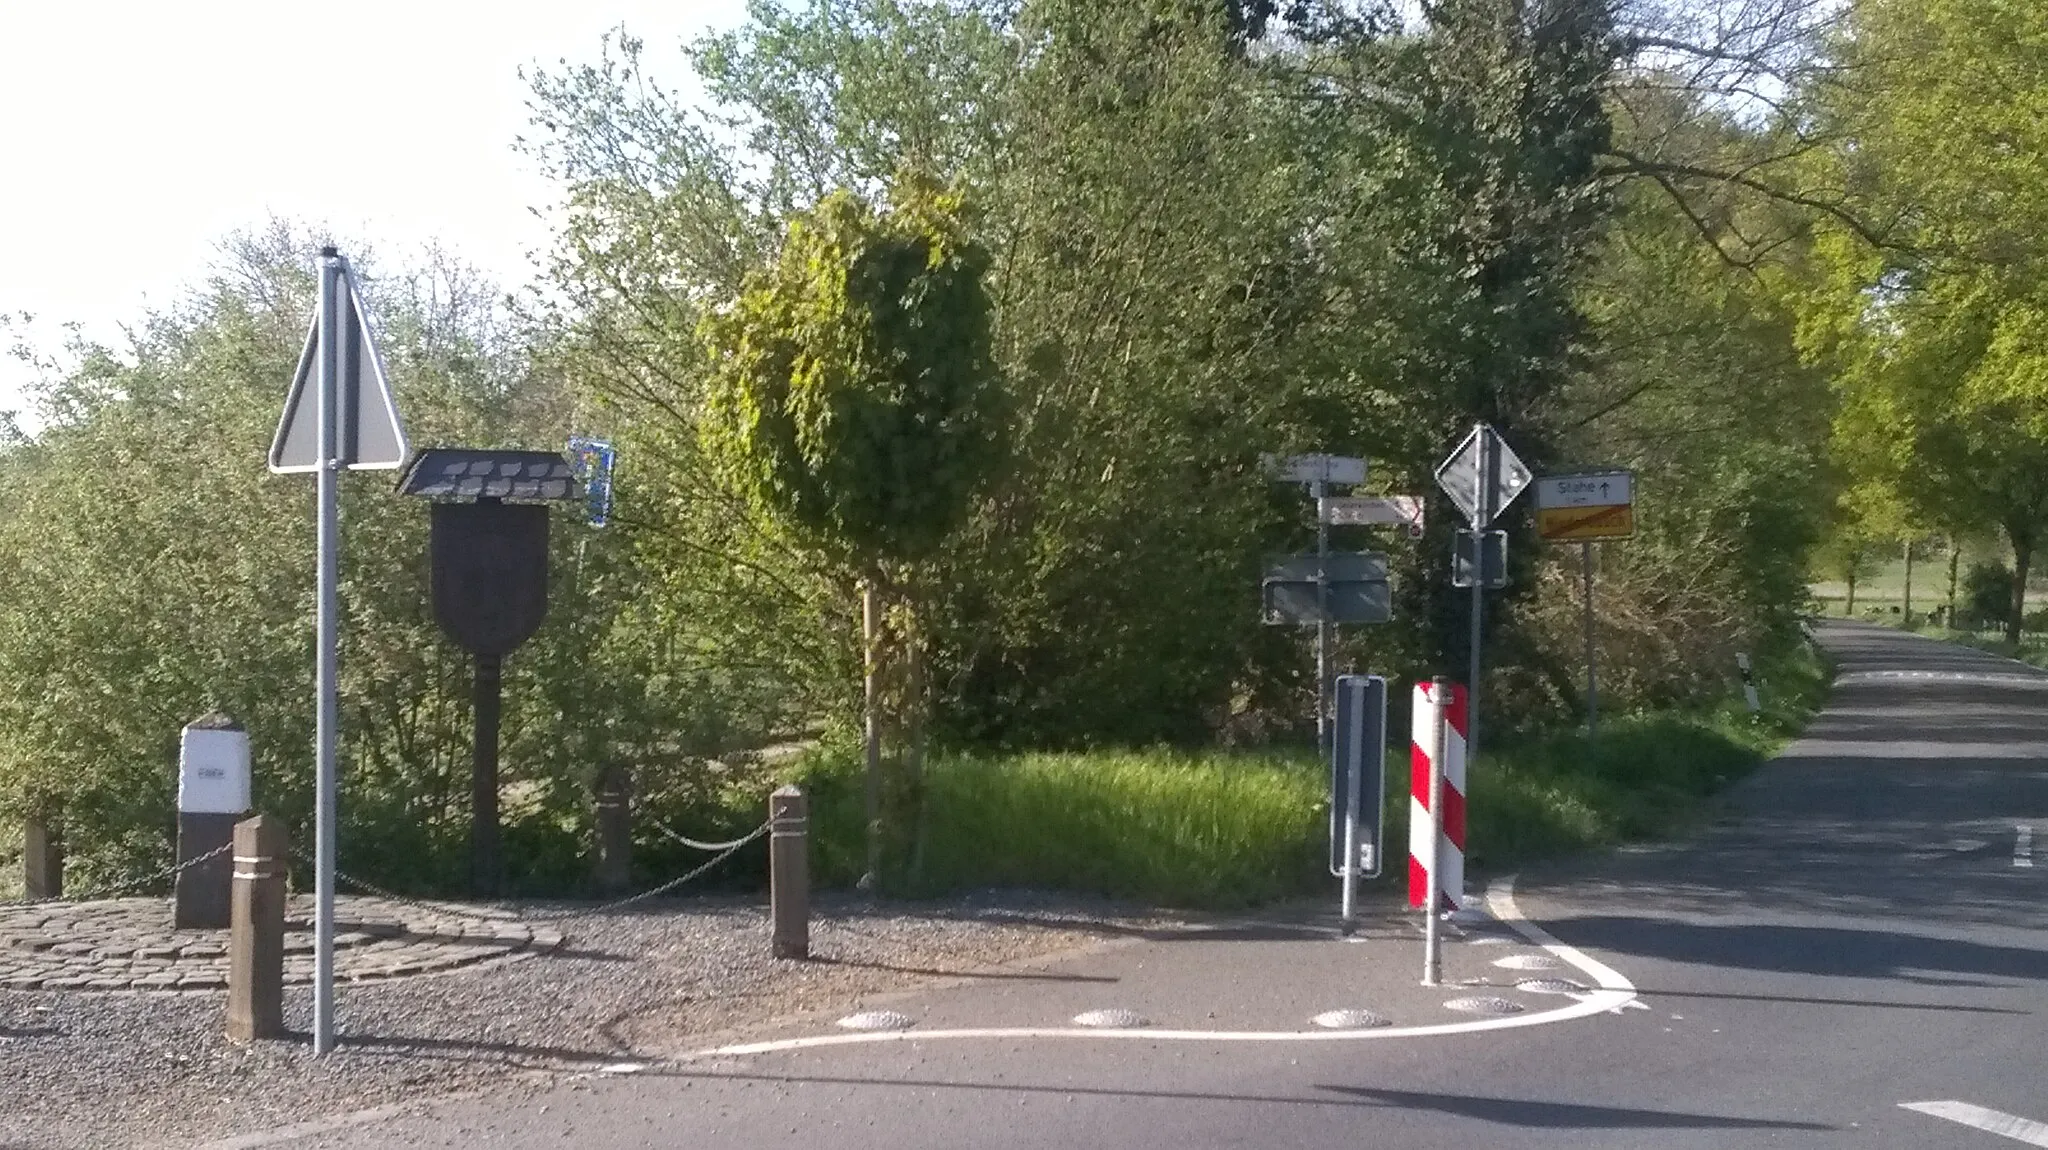 Photo showing: Rechts kijken we de weg An der Venn in. Links op de foto staat grenspaal 266 van de grens tussen Nederland en Duitsland. Op de houten paal ernaast staat het opschrift: GRENZTREFF HERINGBOS - NIEDERBUSCH 5 09 1999 en twee wapens in houtsnijwerk. Rechts van het midden staat een fietswegwijzer. Links van de weg erachter staat het bord met Stahe 1km en einde Niederbusch.